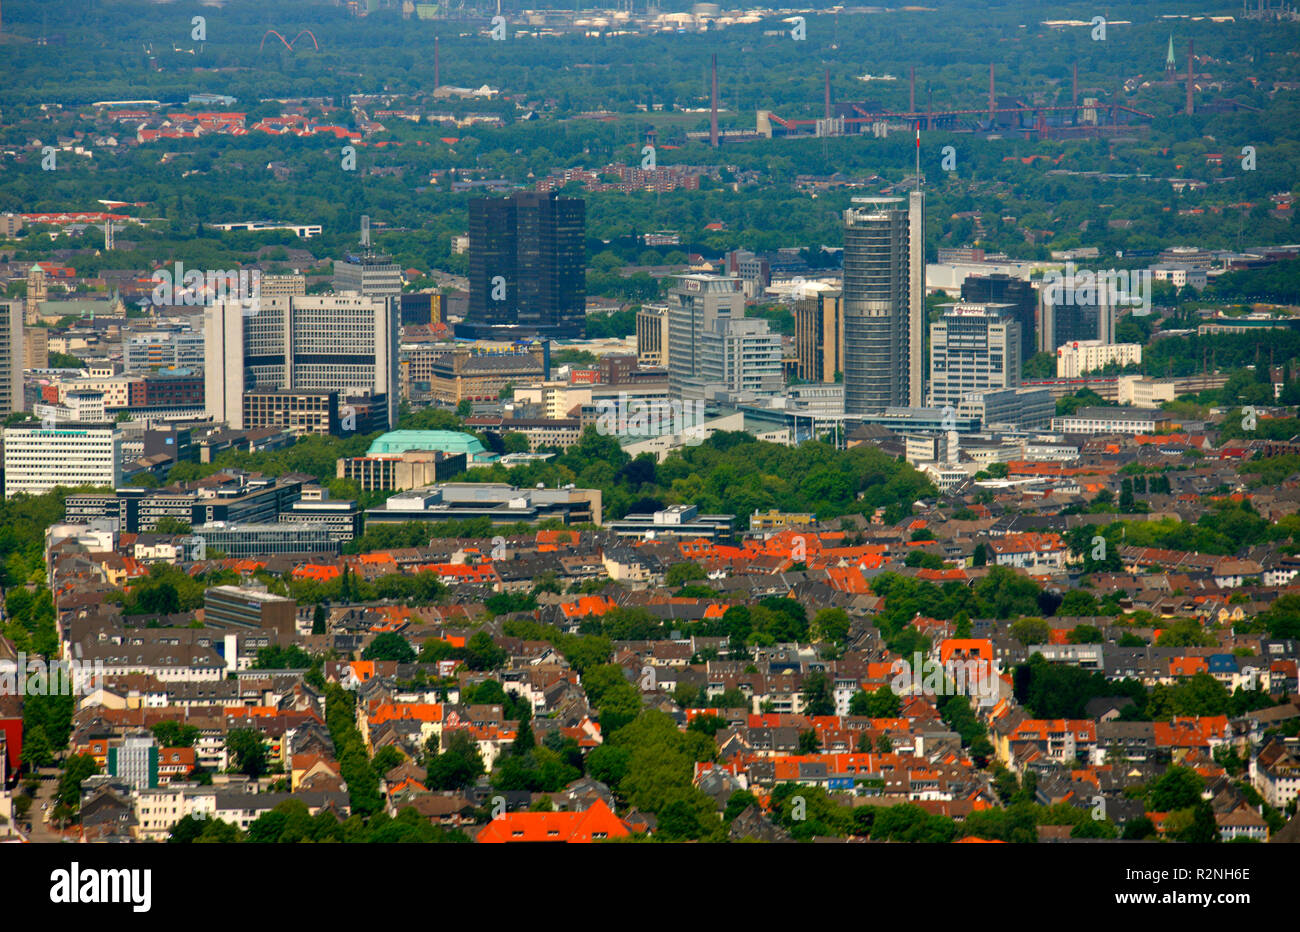 Essen Skyline, RWE-Tower, RWE-Power, Rellinghausen, Essen, Ruhr Area, North Rhine-Westphalia, Germany, Europe, Stock Photo